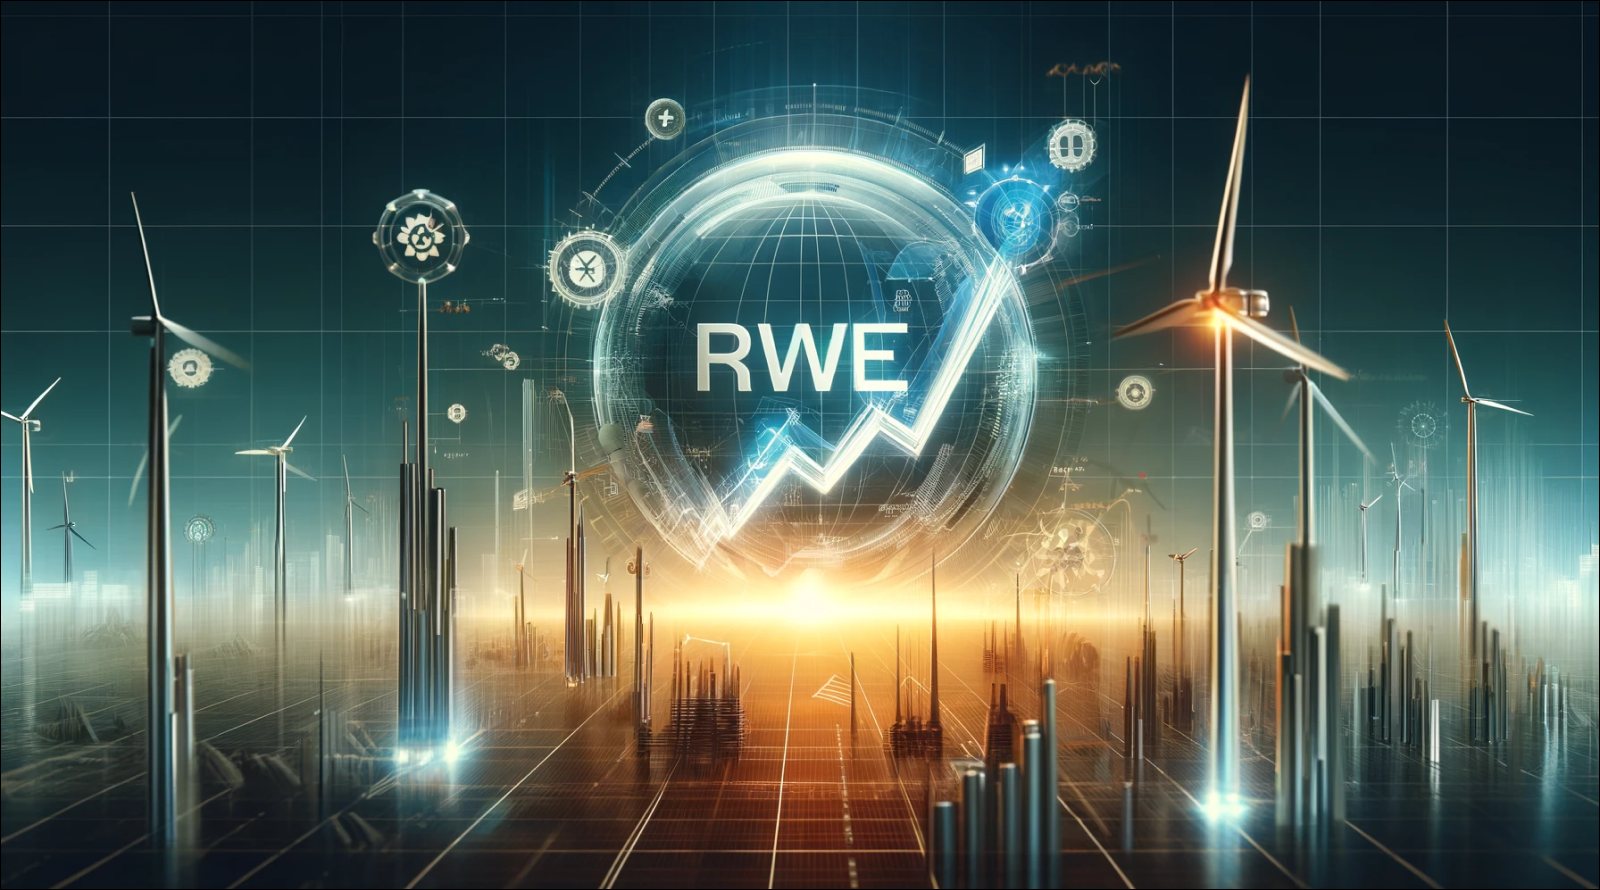 Ein futuristisches Konzept eines Energieunternehmens mit Windkraftanlagen, symbolischen Netzwerkelementen und dem RWE-Logo